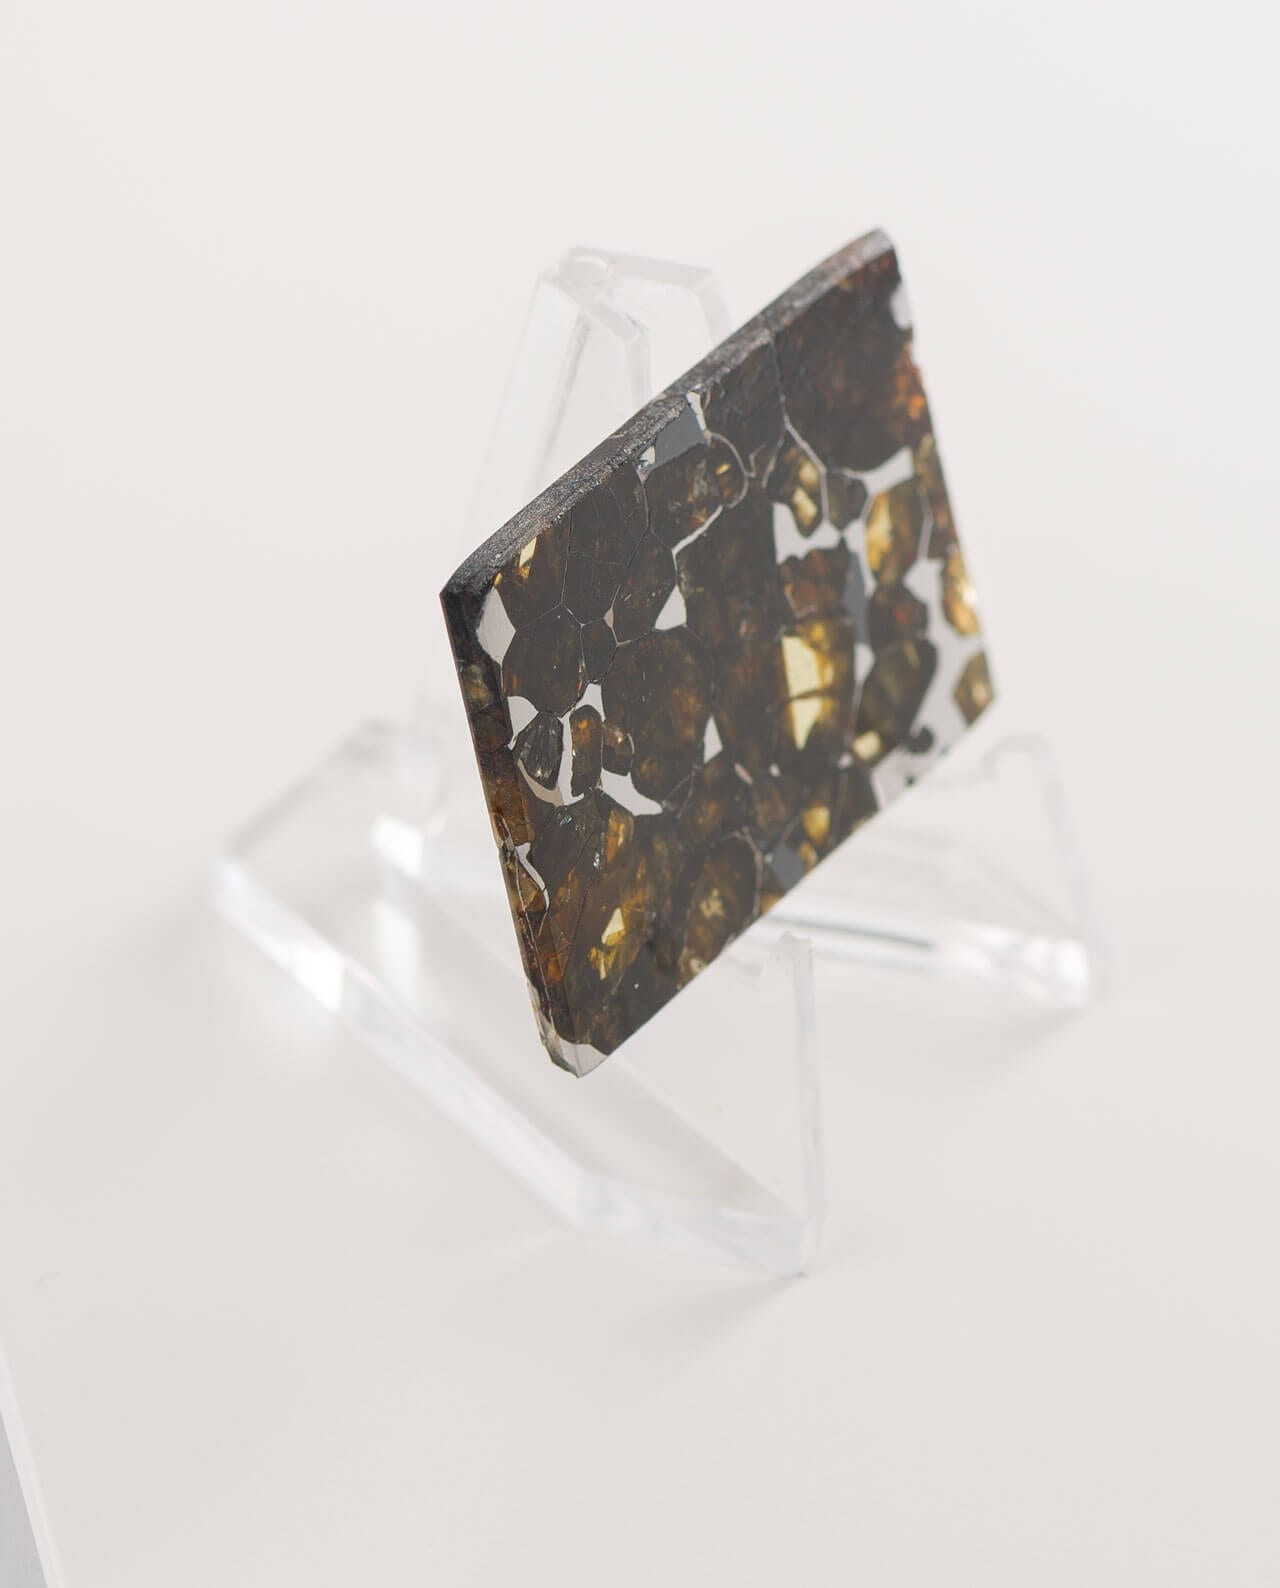 CONLIGHT Seymchan Pallasit Meteorite Iron 2E